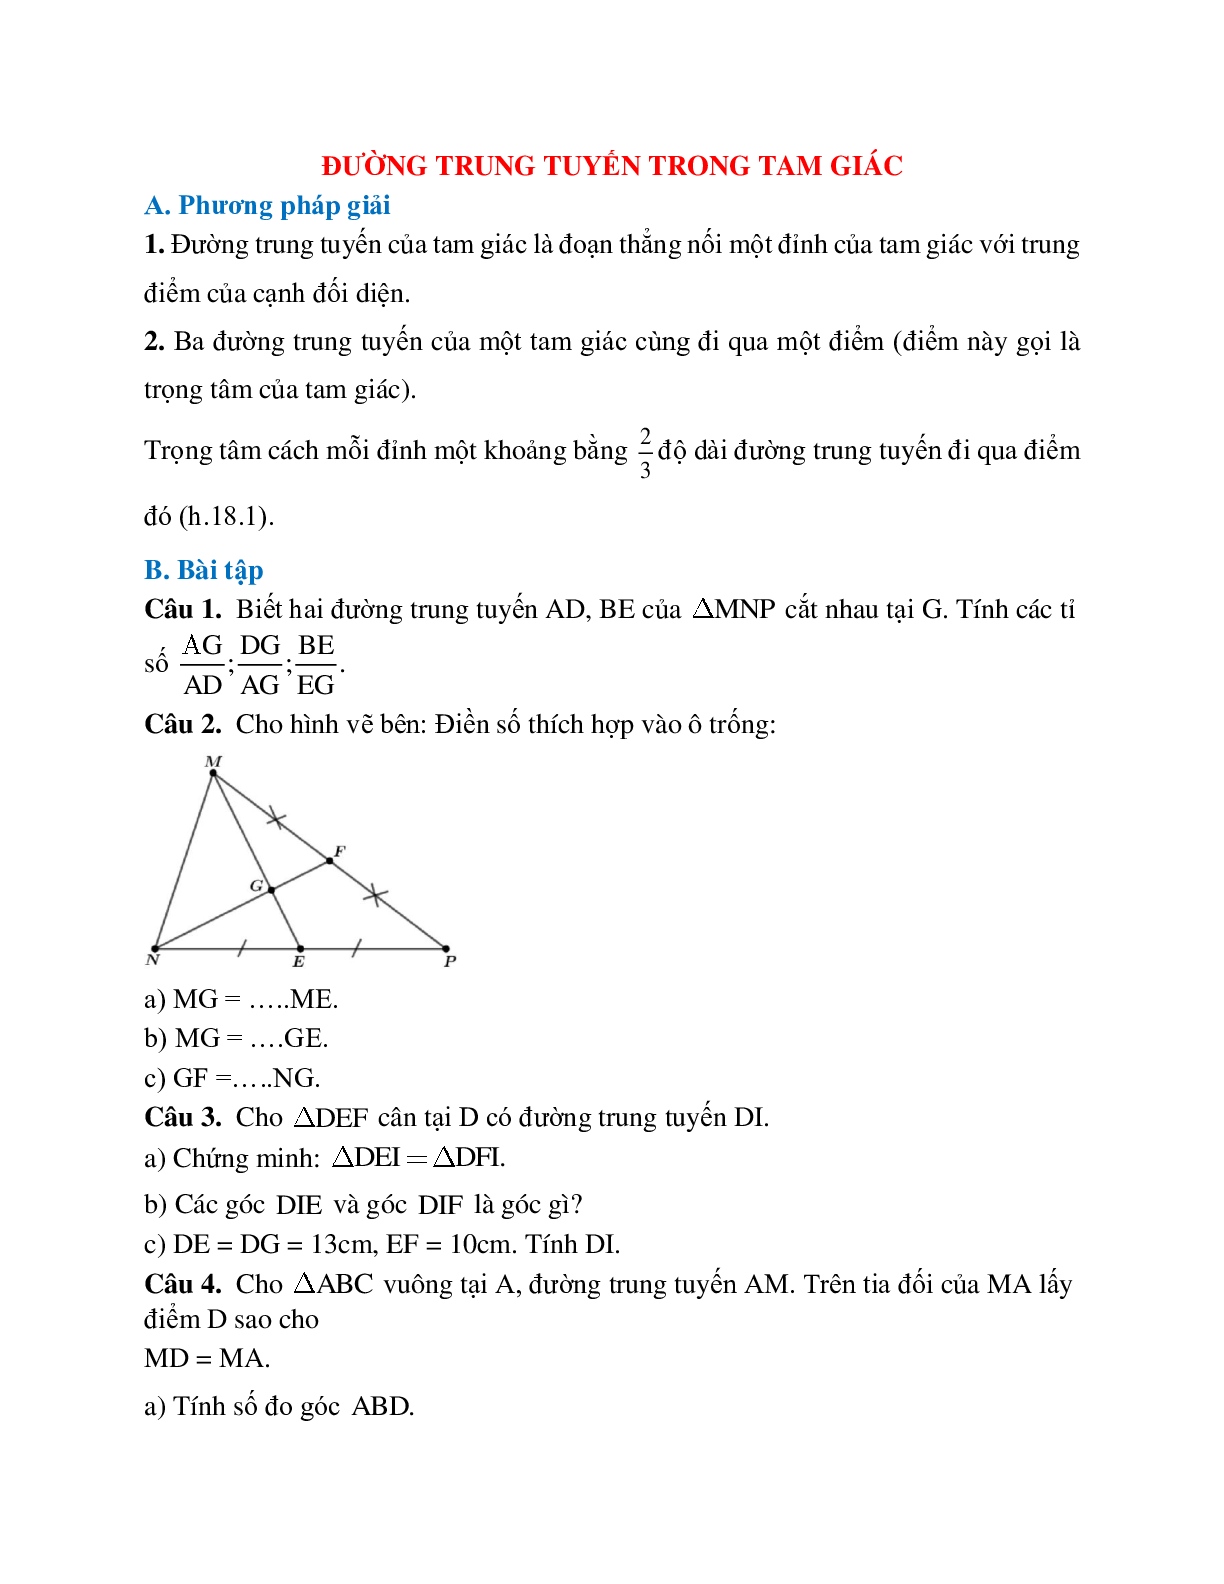 Những bài tập điển hình về Đường trung tuyến trong tam giác chọn lọc (trang 1)